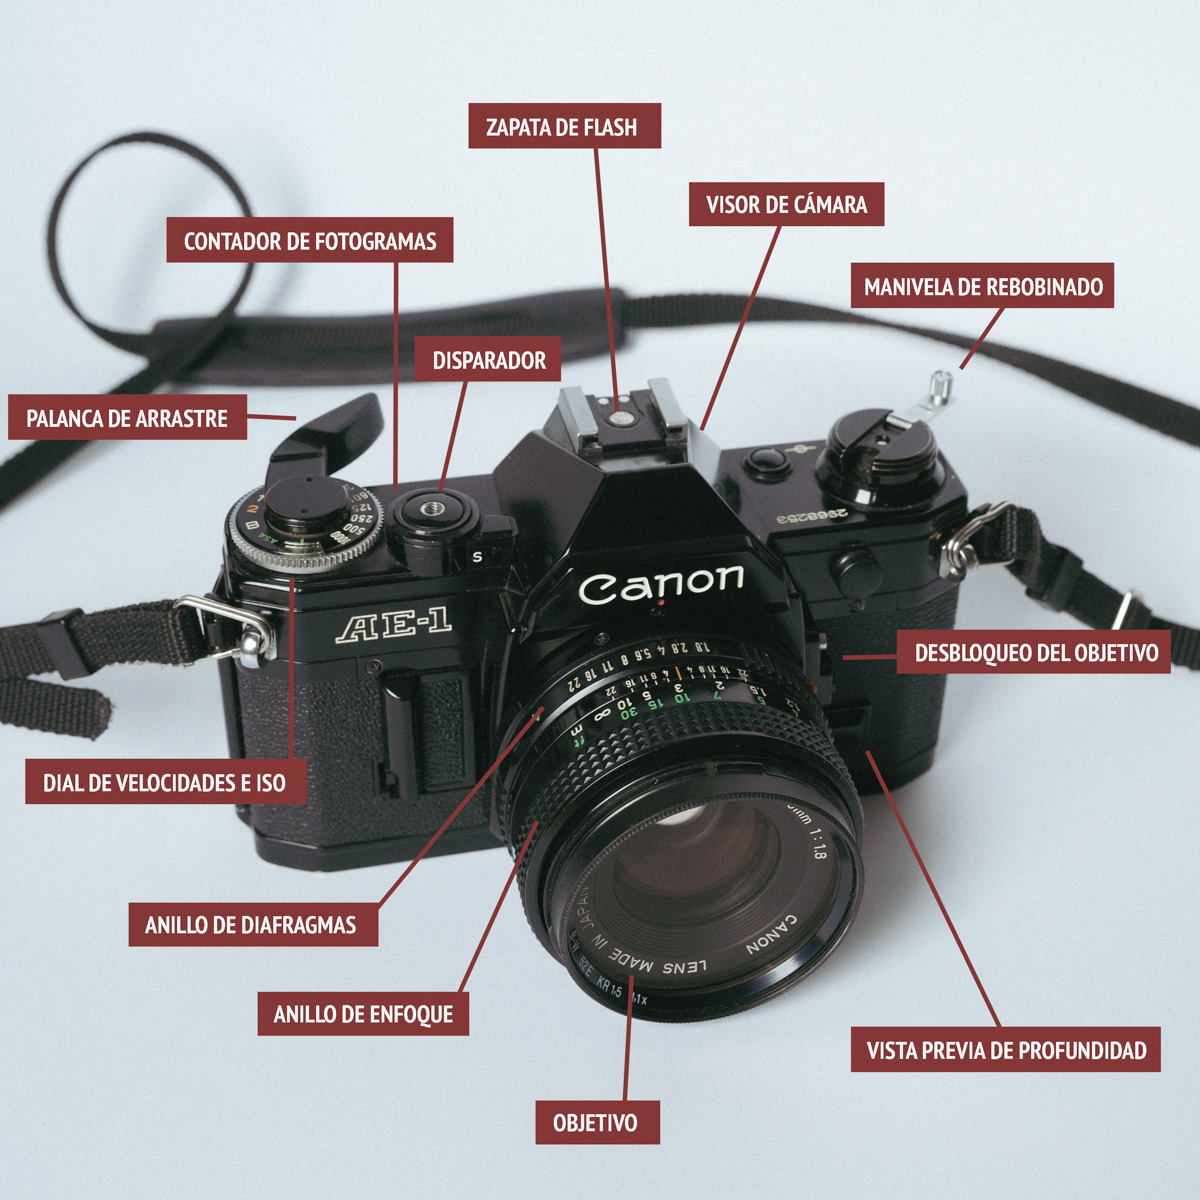 Cómo funciona y qué hay dentro de tu cámara desechable? – FOTO ANALÓGICA